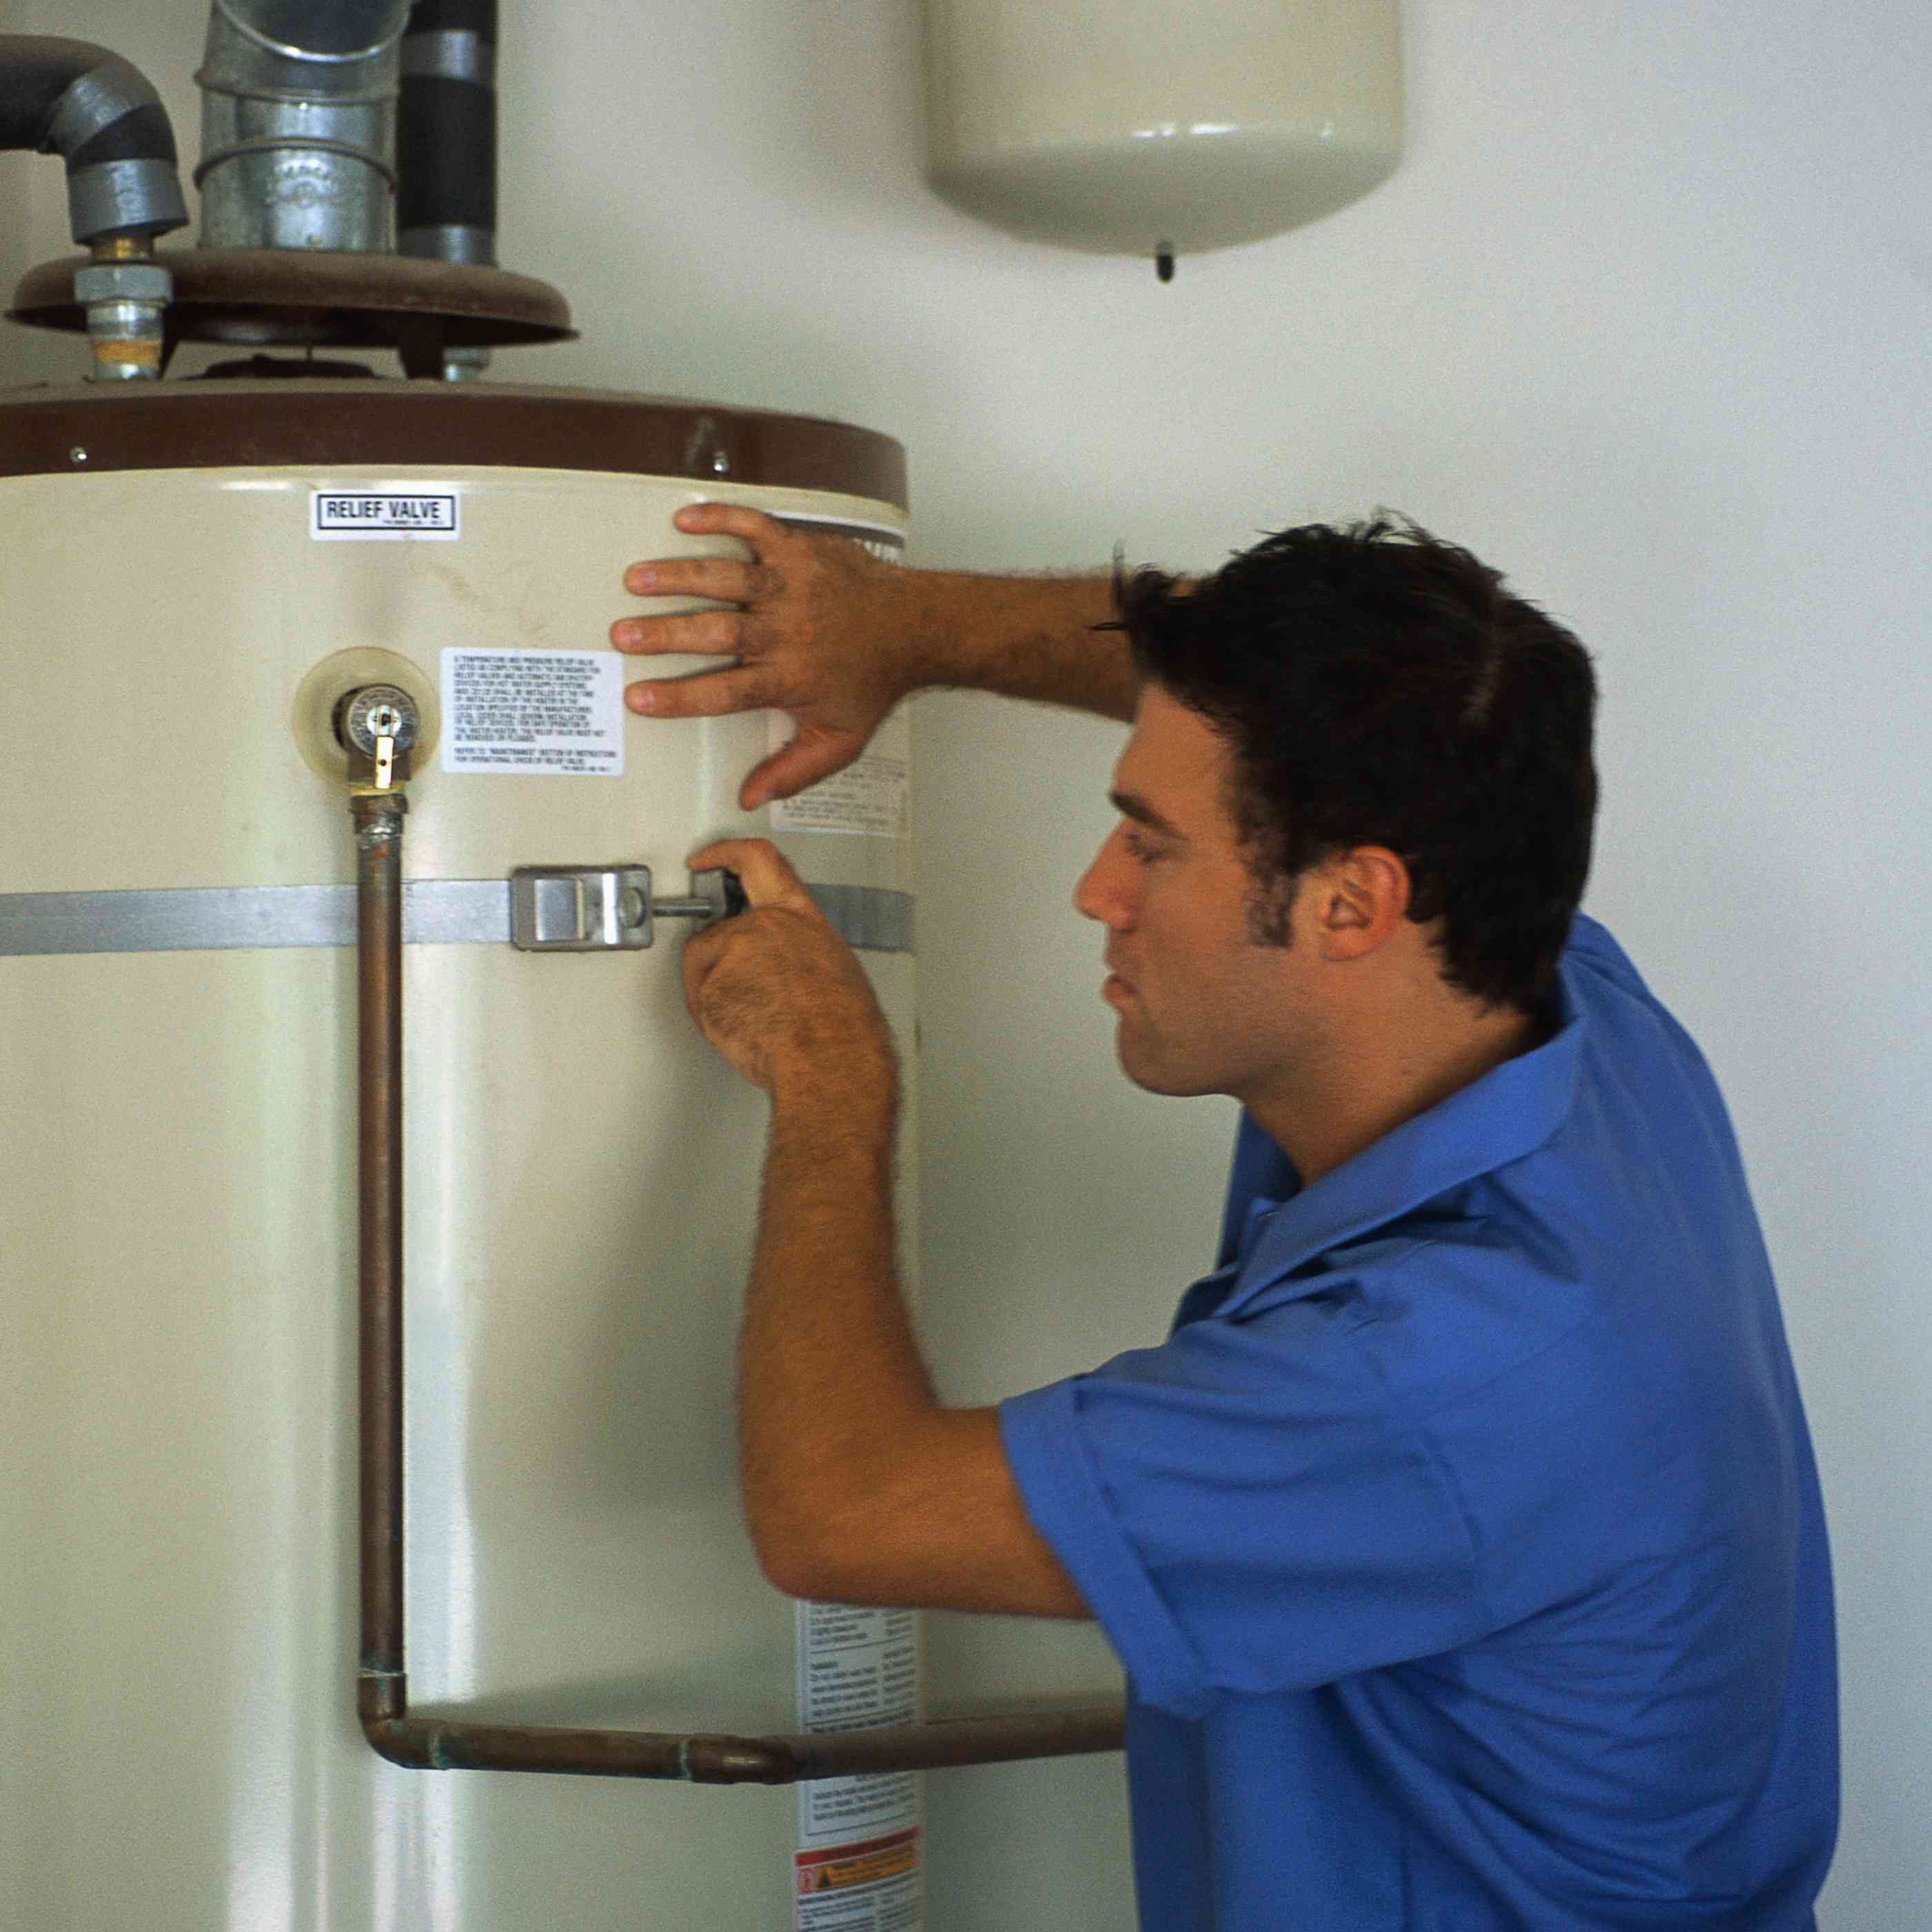 Как выбрать газовый водонагреватель для частного дома и квартиры и где лучше его устанавливать